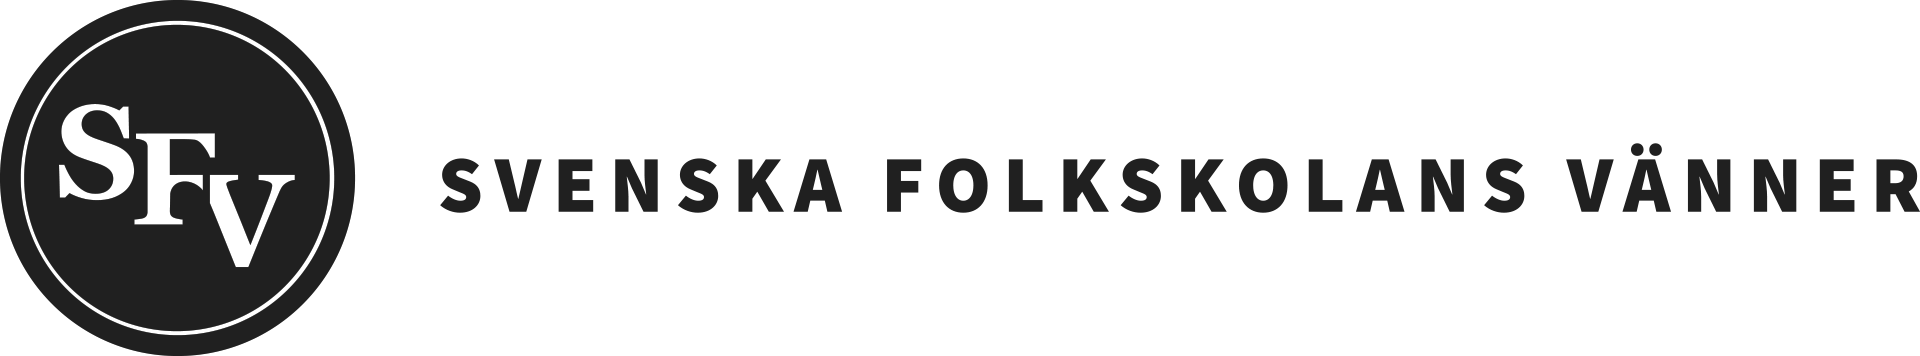 Svenska folkskolans vänner (SFV) logo